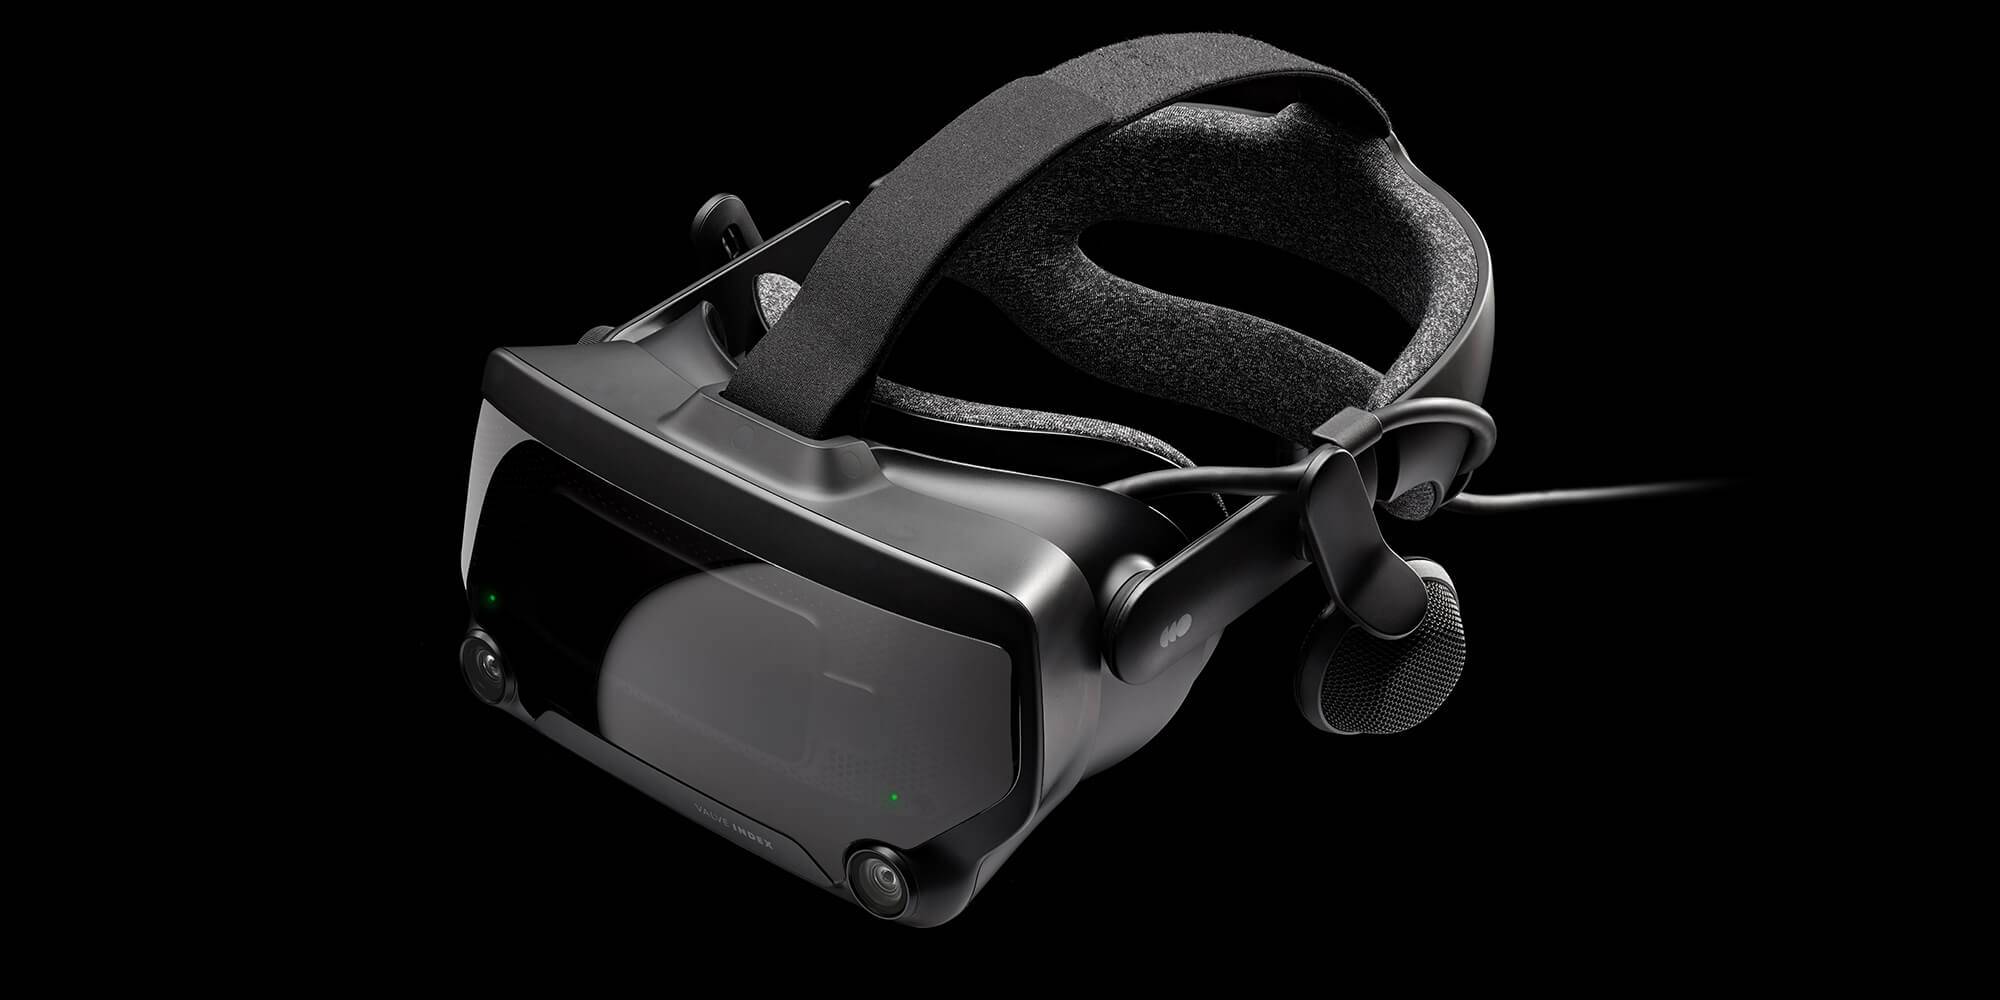 Valve Index promete mais imersão em realidade virtual, mas cobra caro